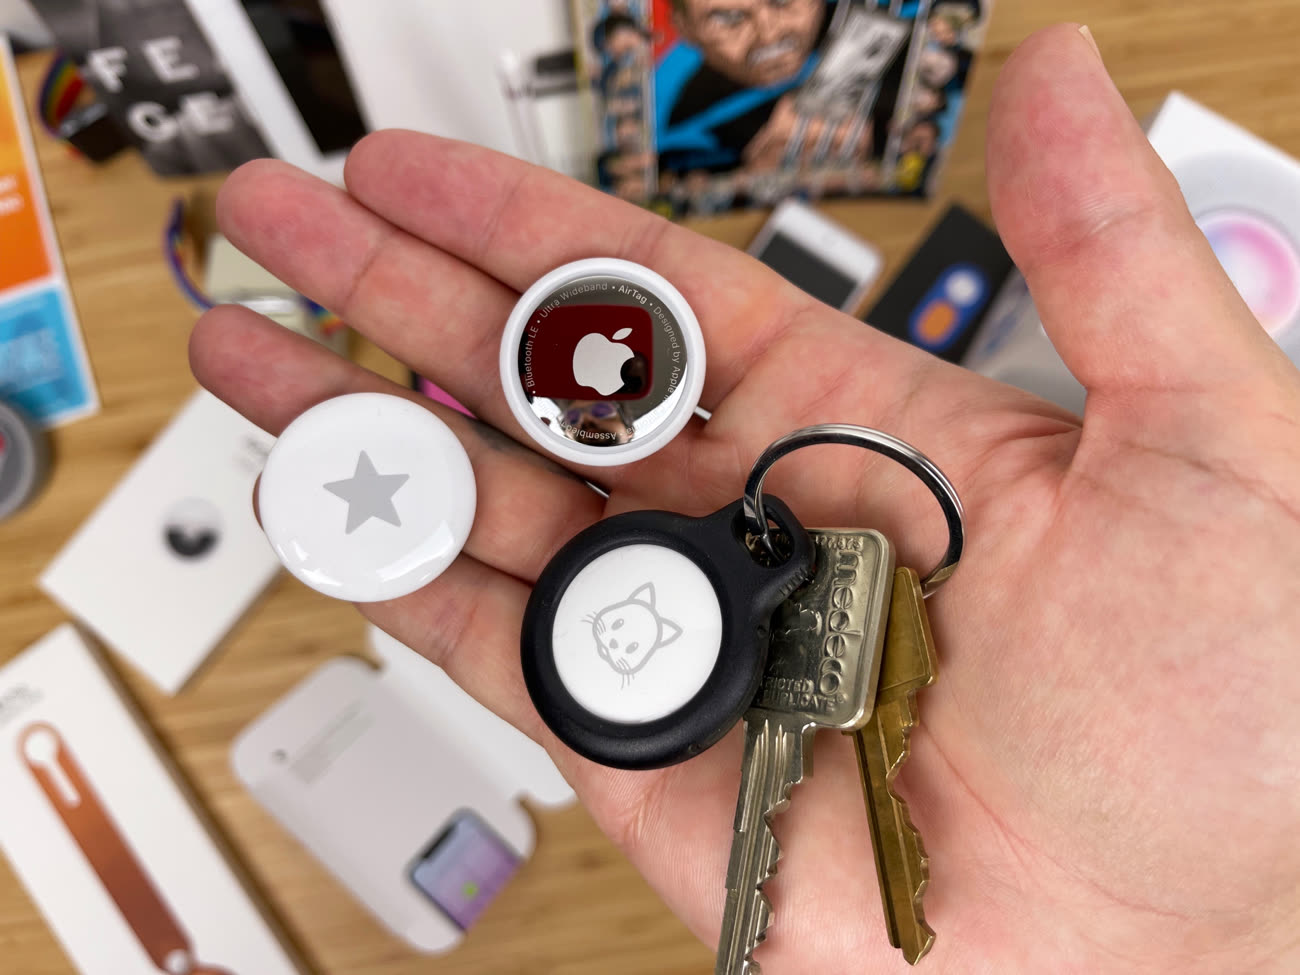 Test des Apple AirTags: Ces trackers Bluetooth sont-ils vraiment